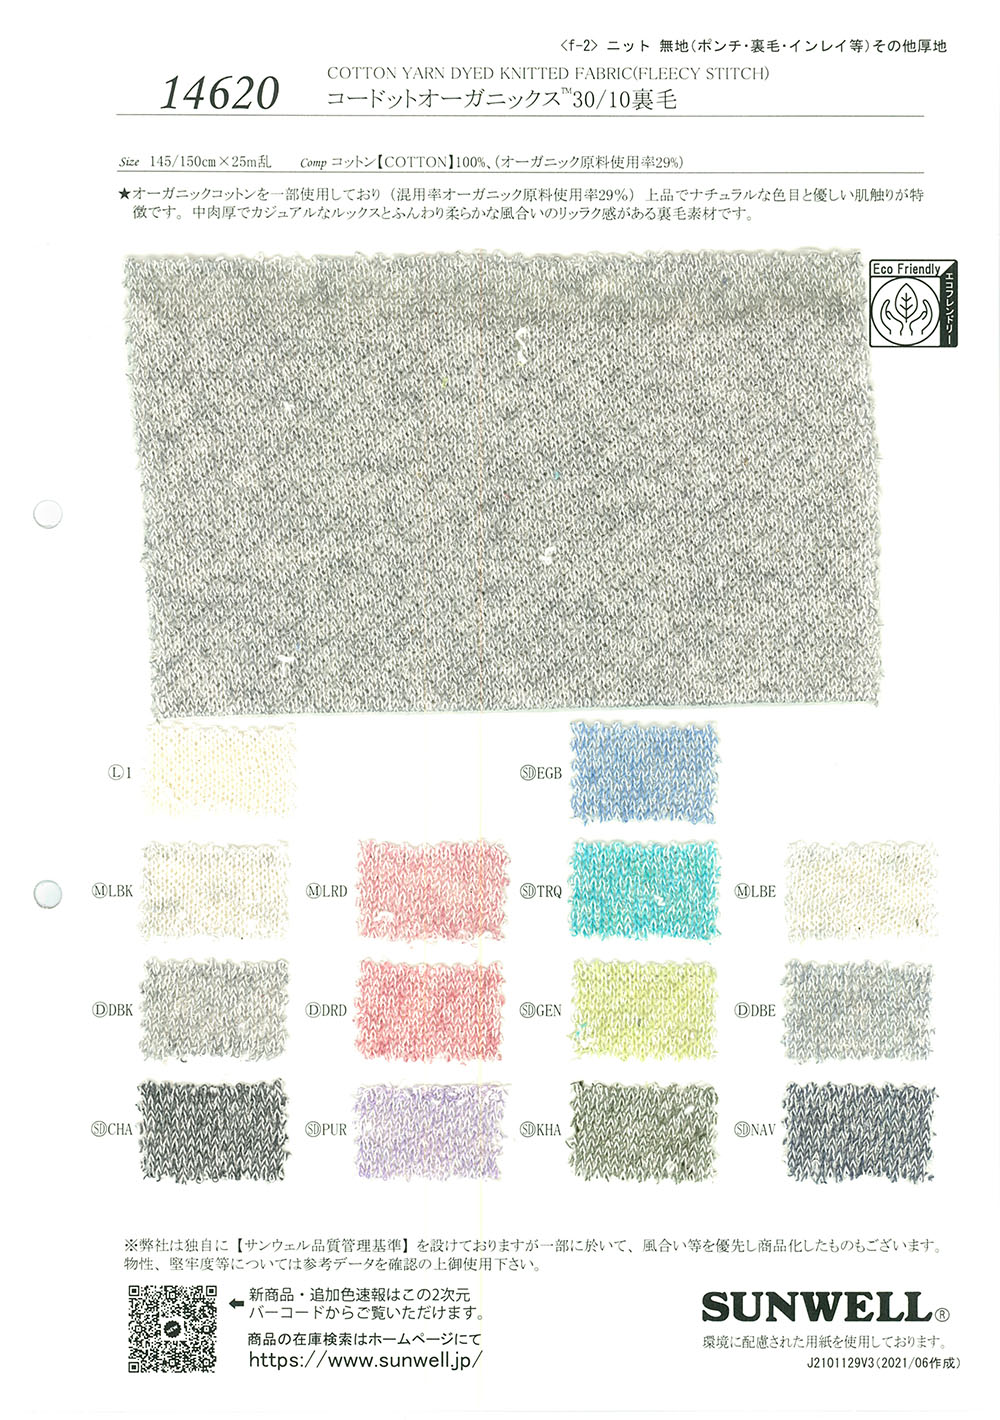 14620 Polar De Algodón Orgánico[Fabrica Textil] SUNWELL